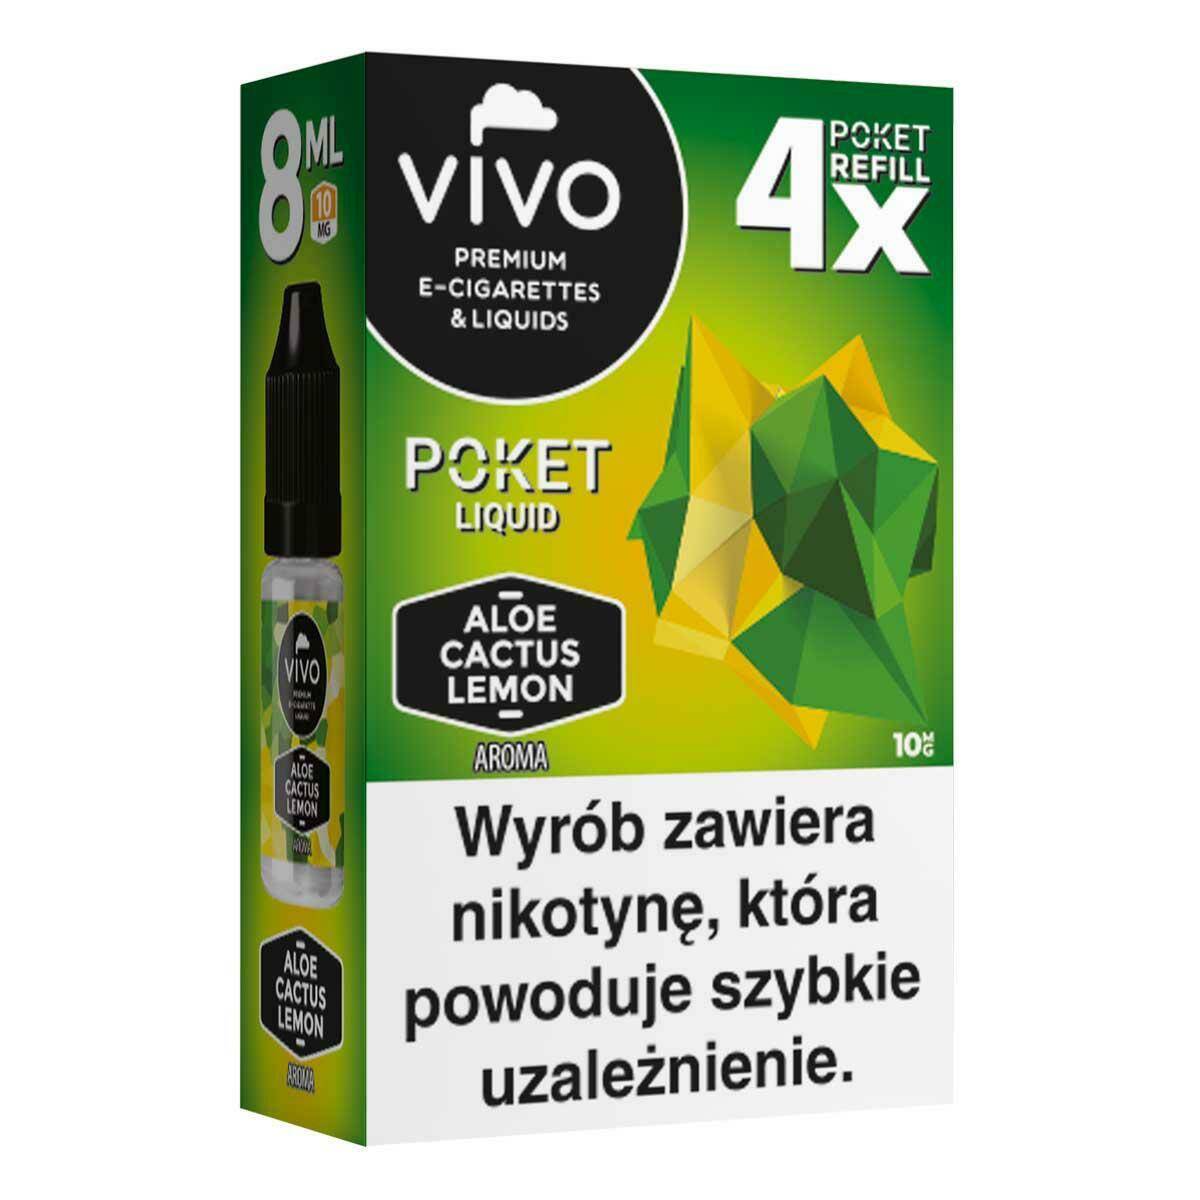 E-liquid VIVO POKET- Aloe Cactus Lemon x4/10mg/8ml (Zdjęcie 3)